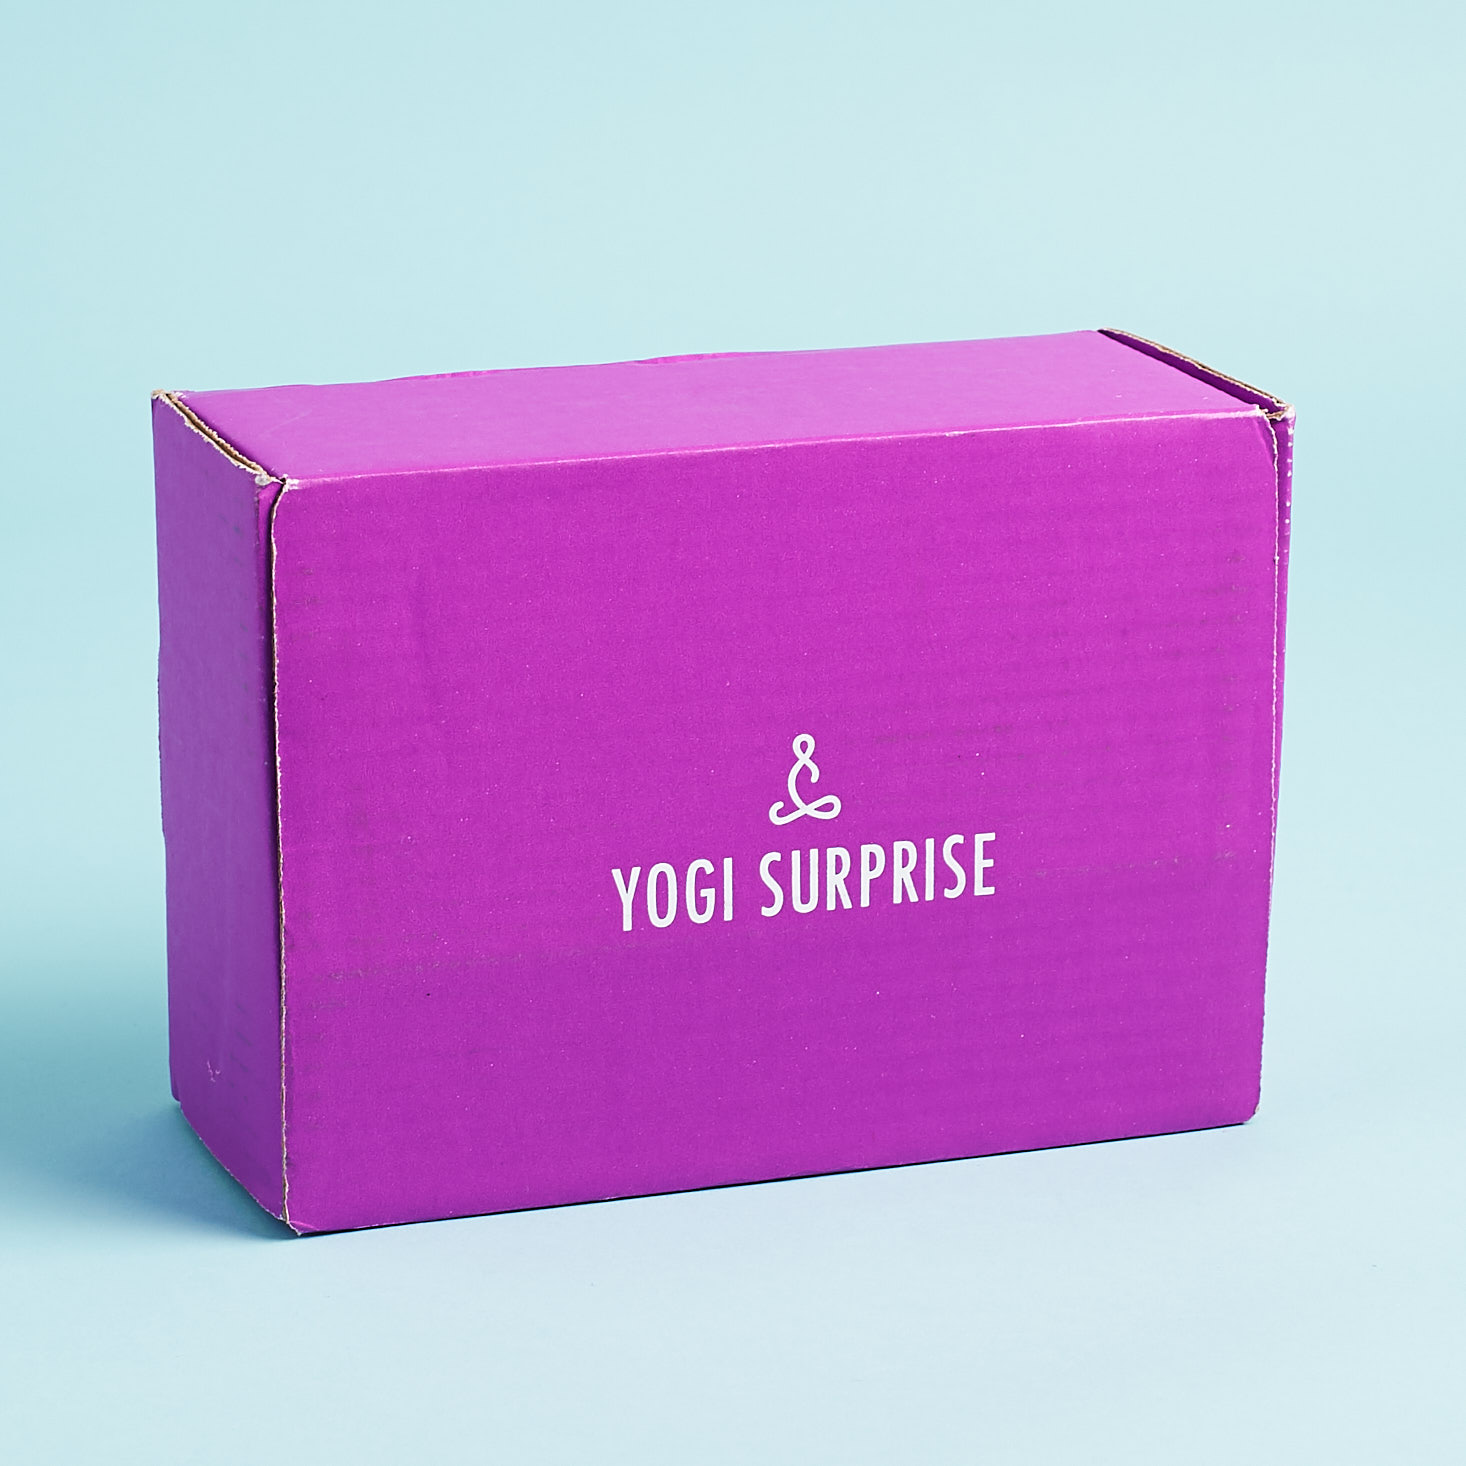 Yogi Surprise Subscription Box Review + Coupon – June 2018